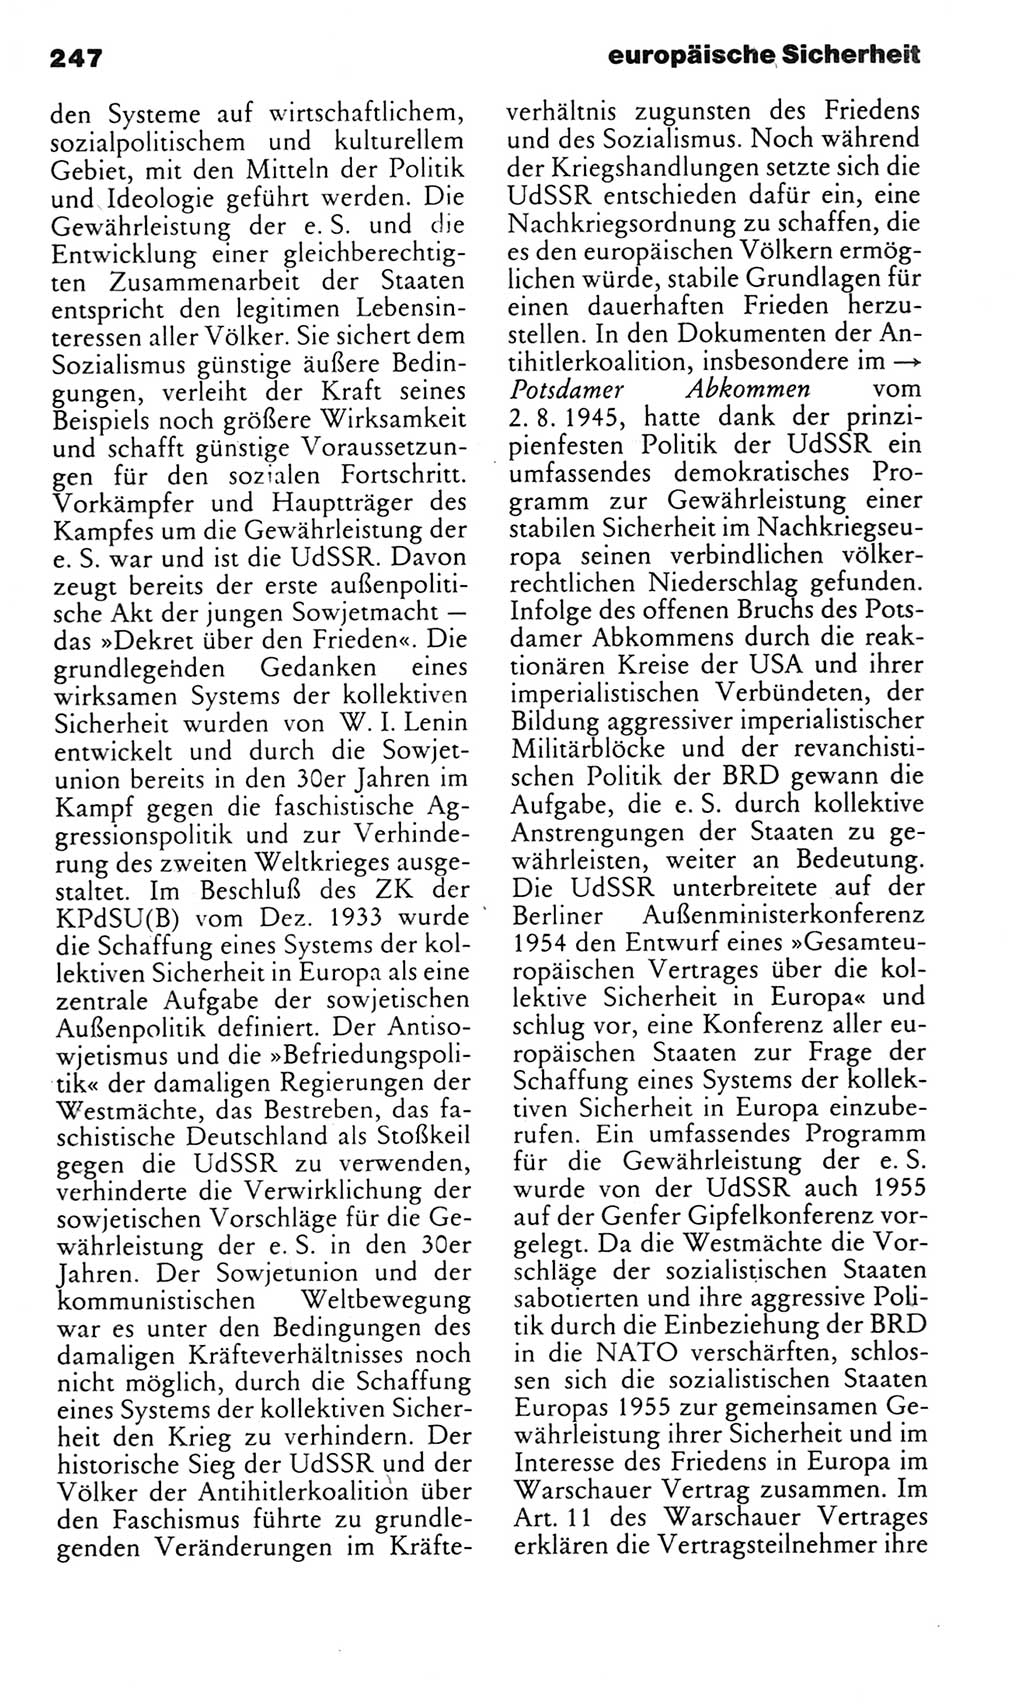 Kleines politisches Wörterbuch [Deutsche Demokratische Republik (DDR)] 1983, Seite 247 (Kl. pol. Wb. DDR 1983, S. 247)